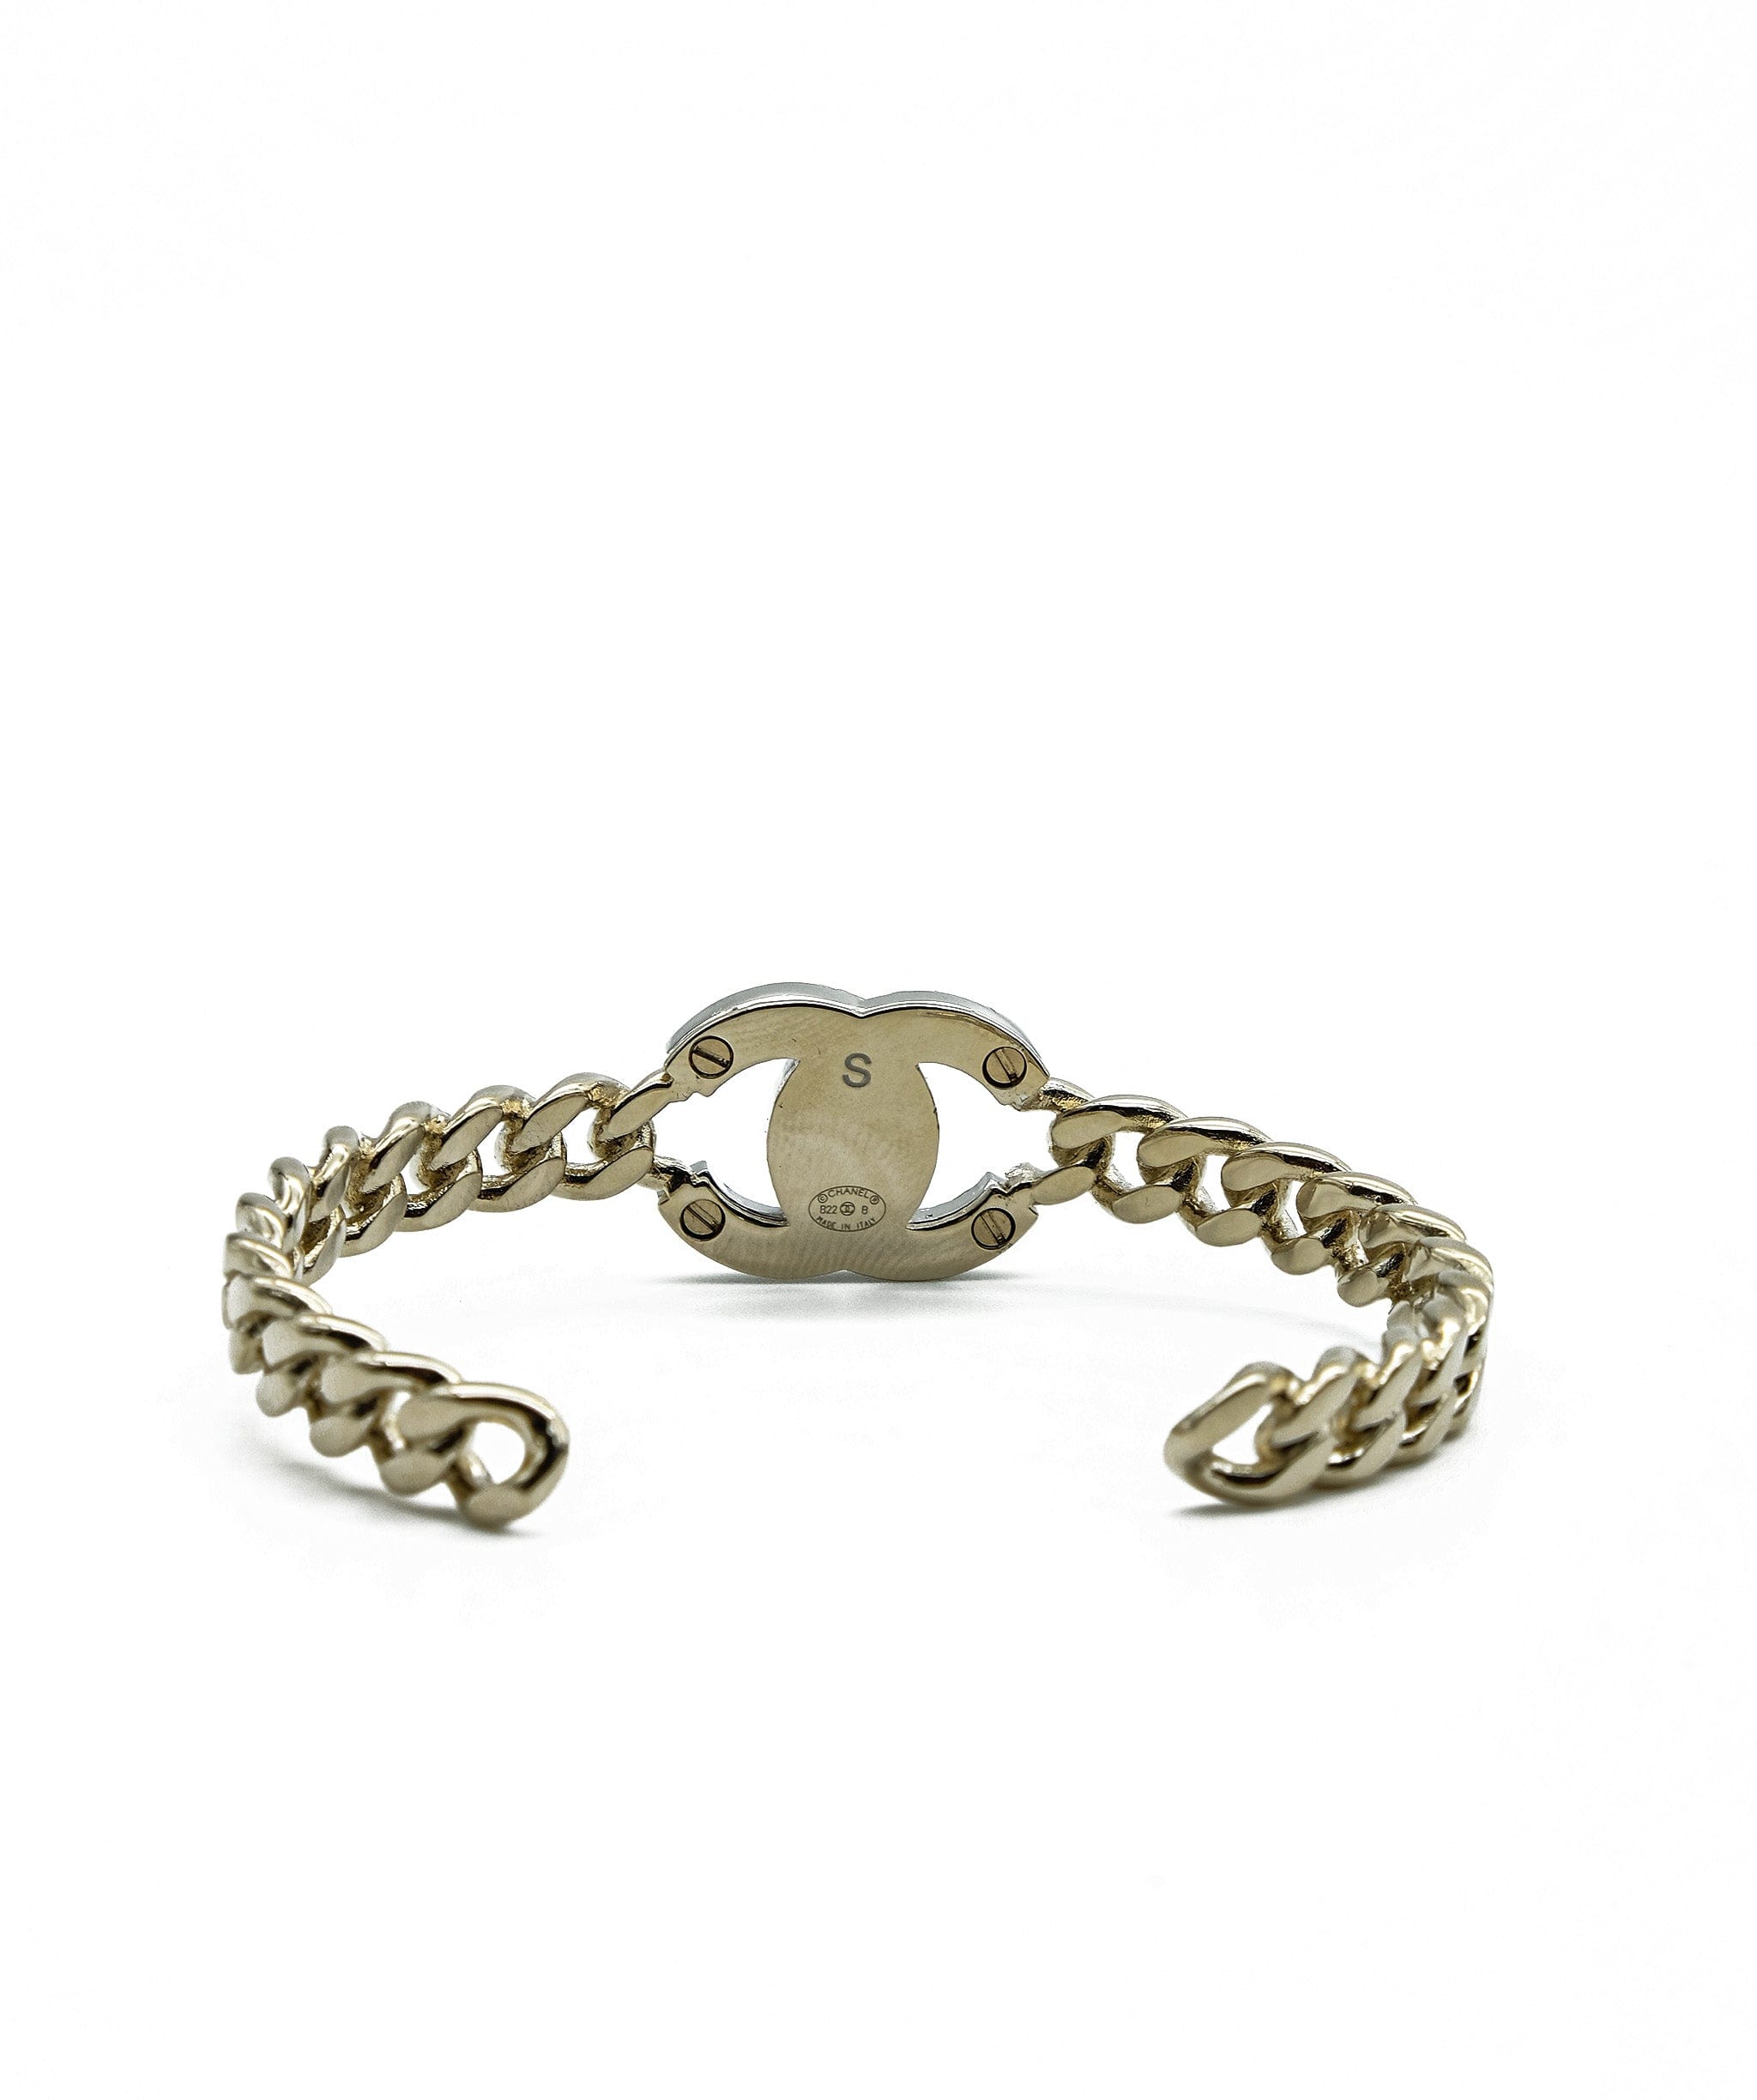 Chanel Chanel Turnlock Bracelet RJC1537